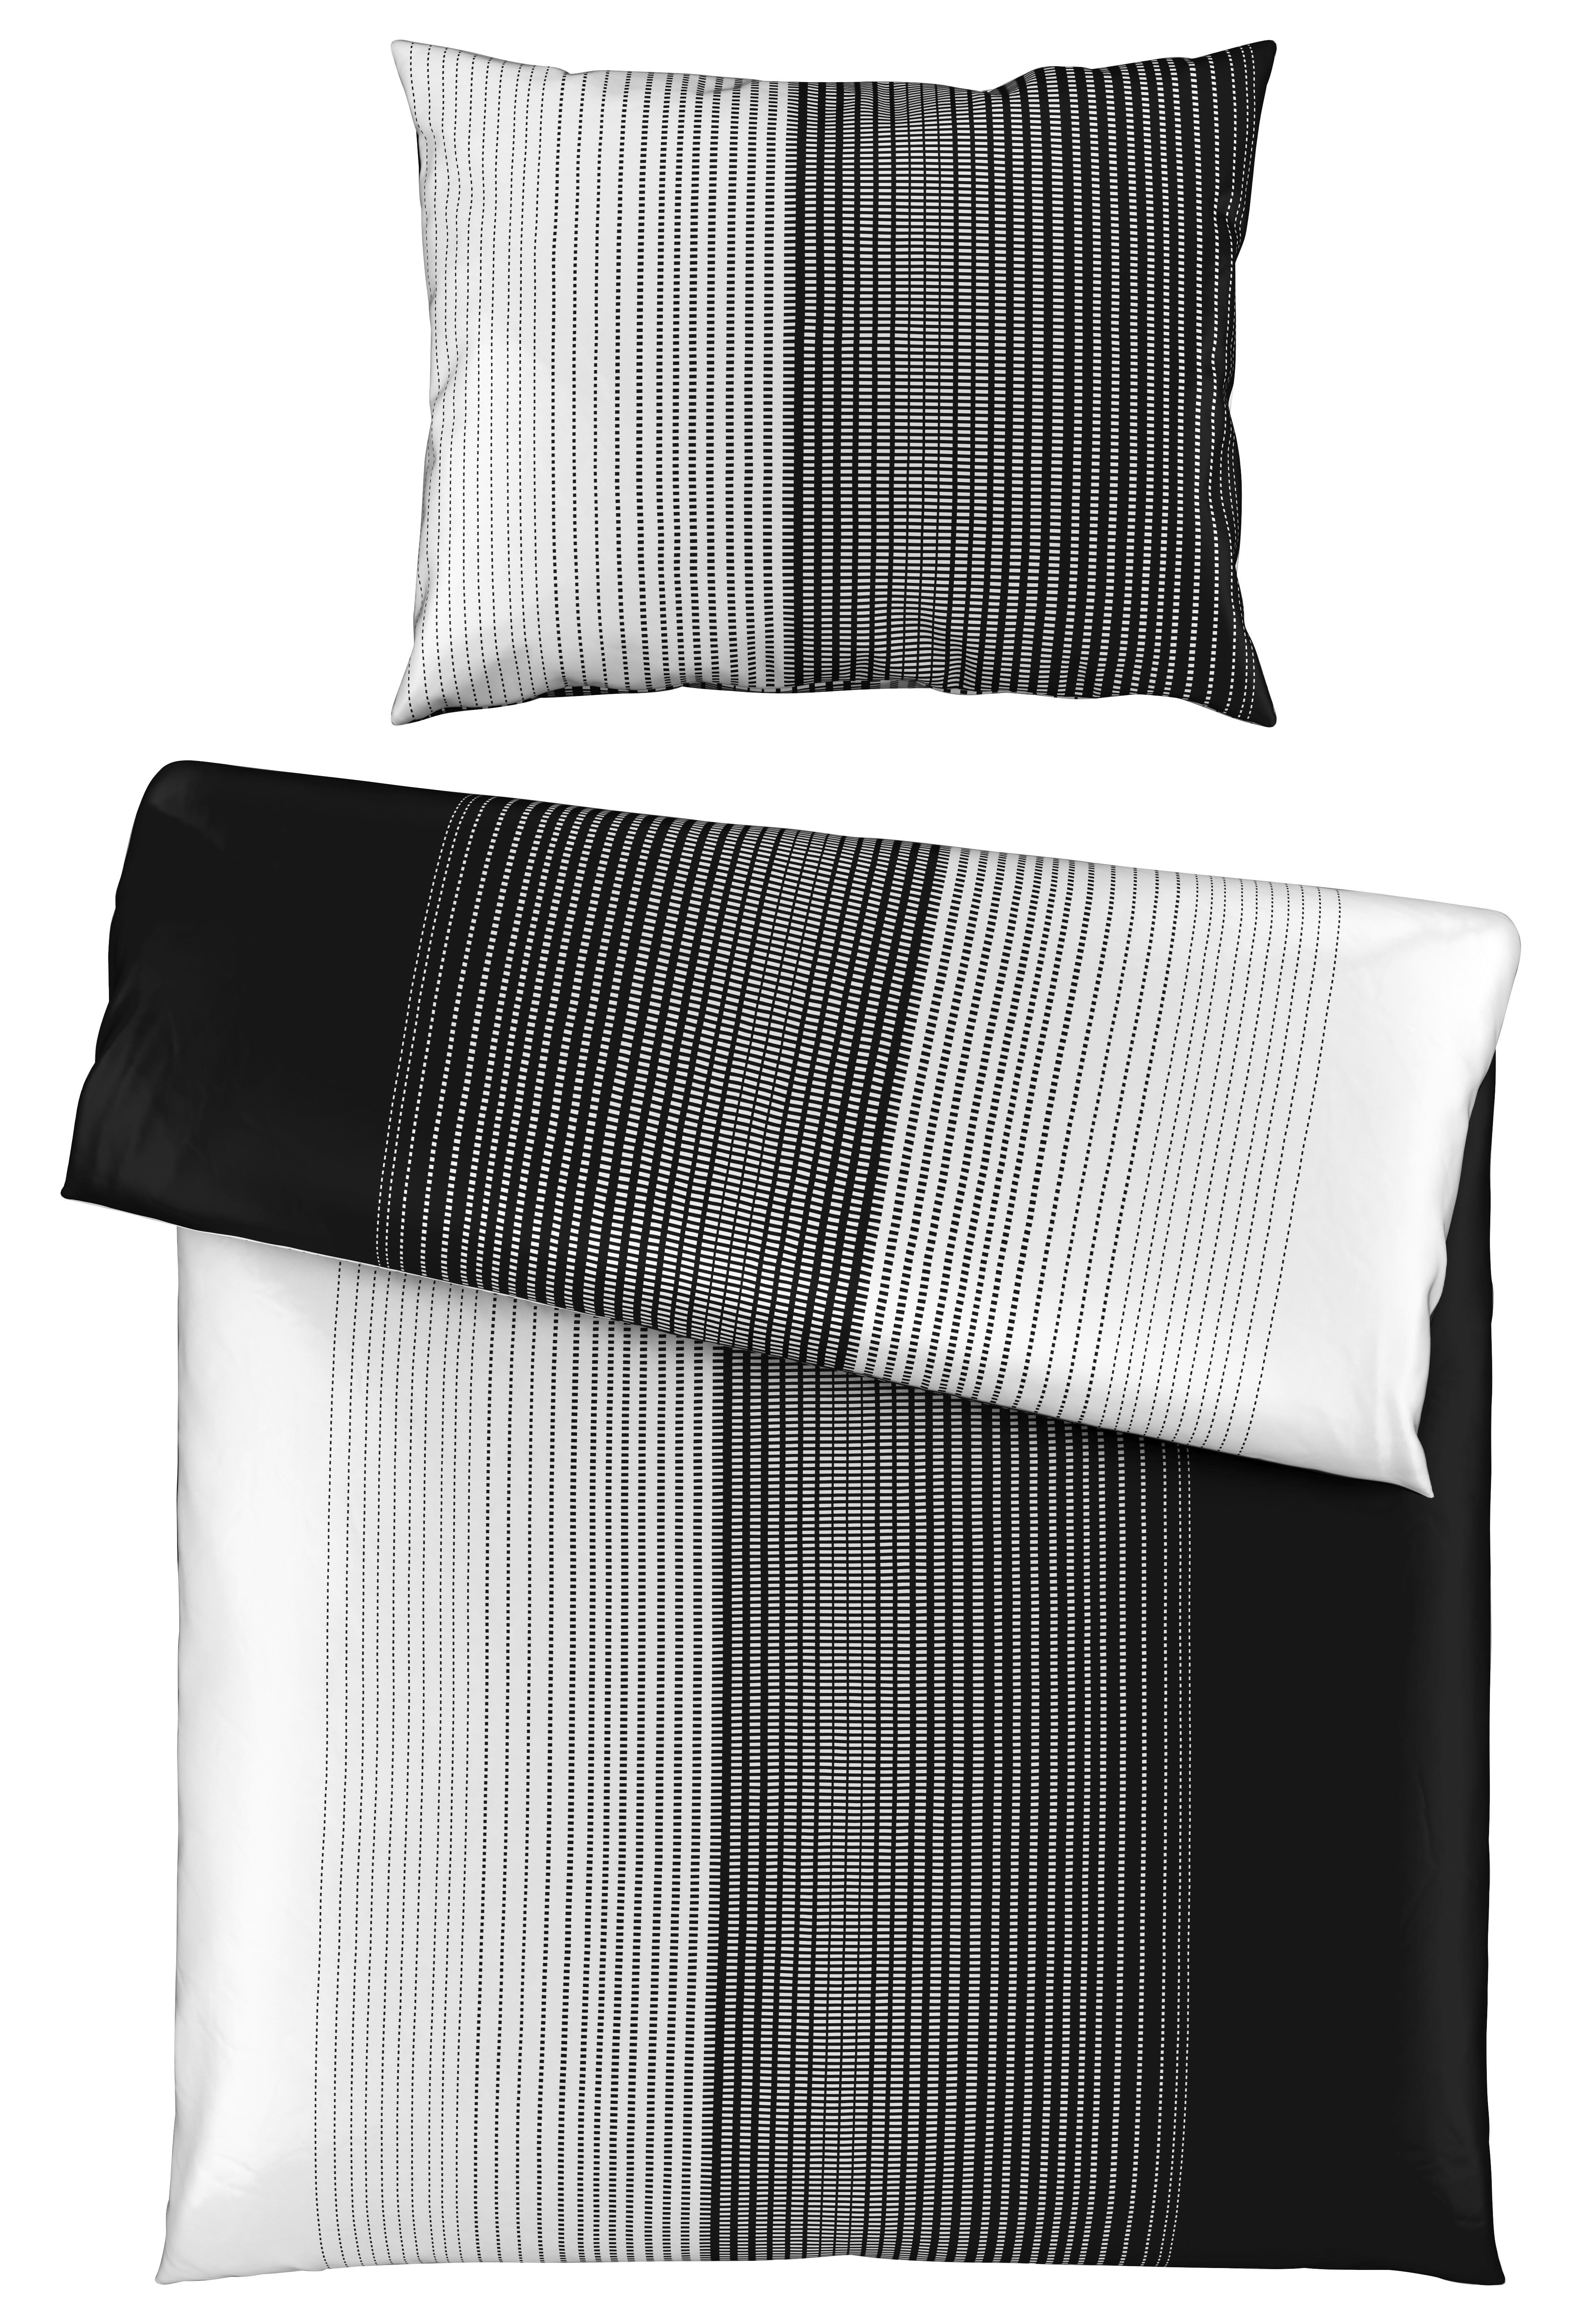 BETTWÄSCHE 140/200 cm  - Schwarz/Weiß, Design, Textil (140/200cm) - Novel